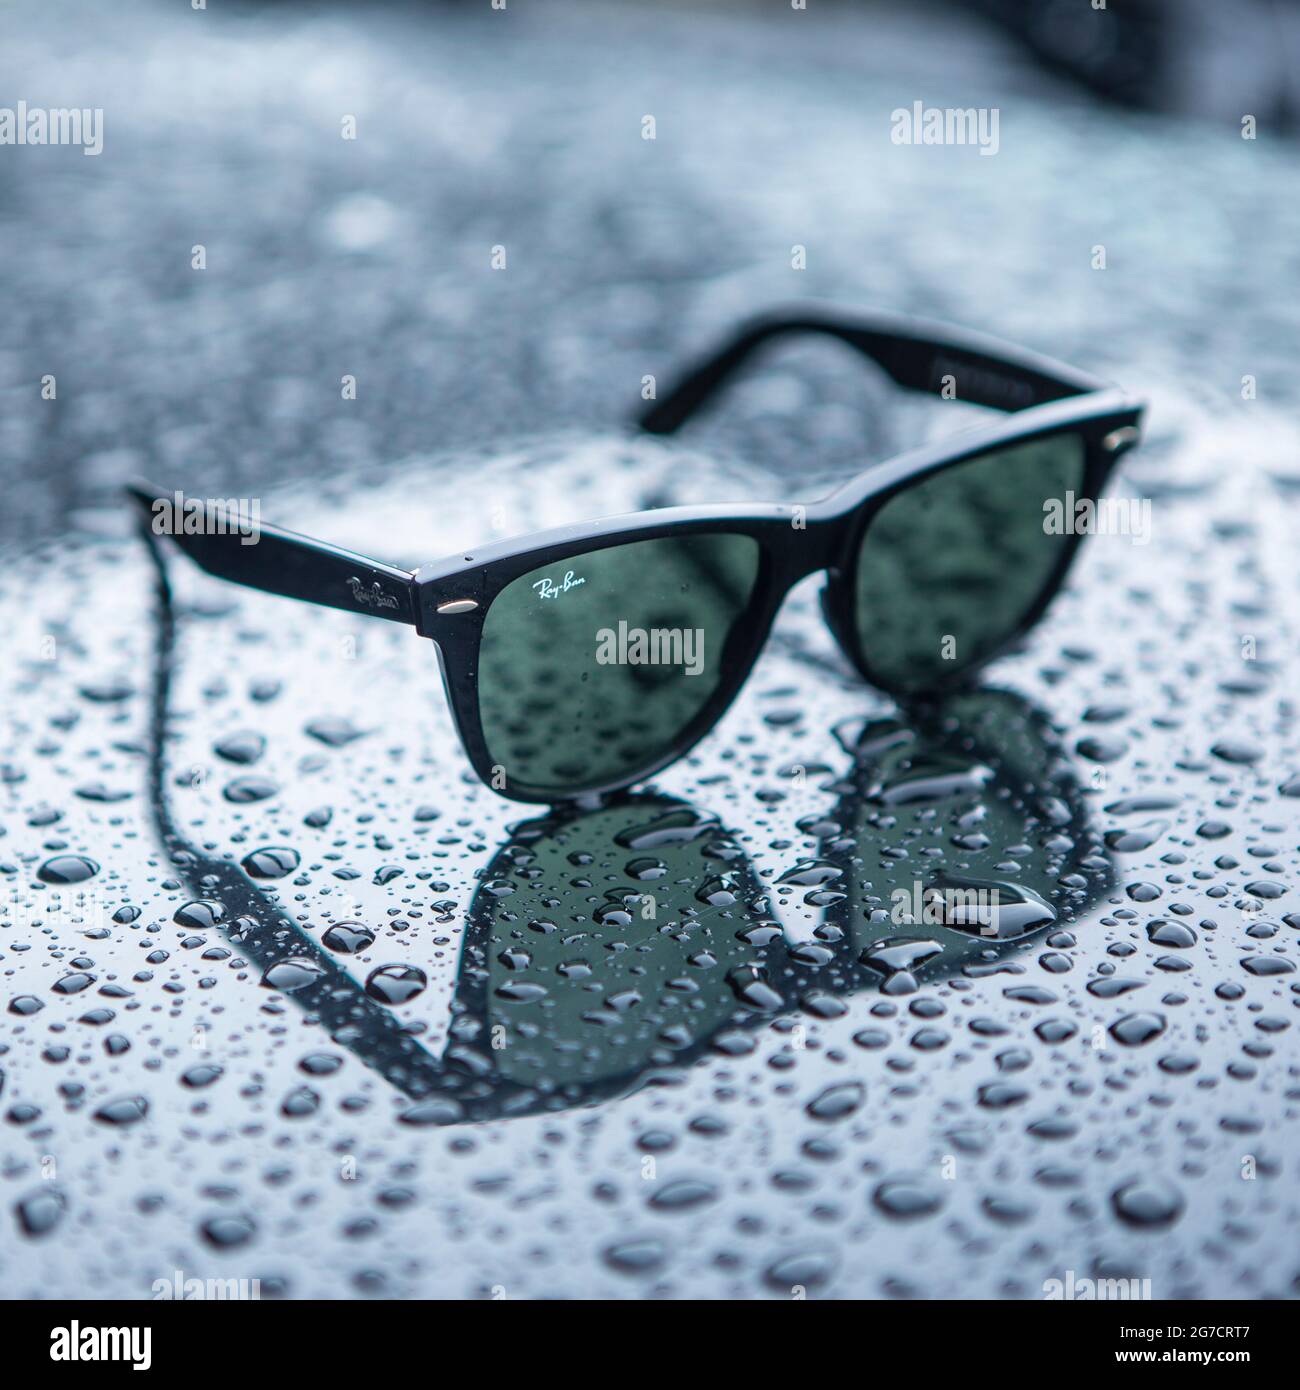 Ray Ban Wayfarer Sonnenbrille mit Regentropfen. Symboldbild Wetter, Sommer, Regenwetter, Regen Stock Photo